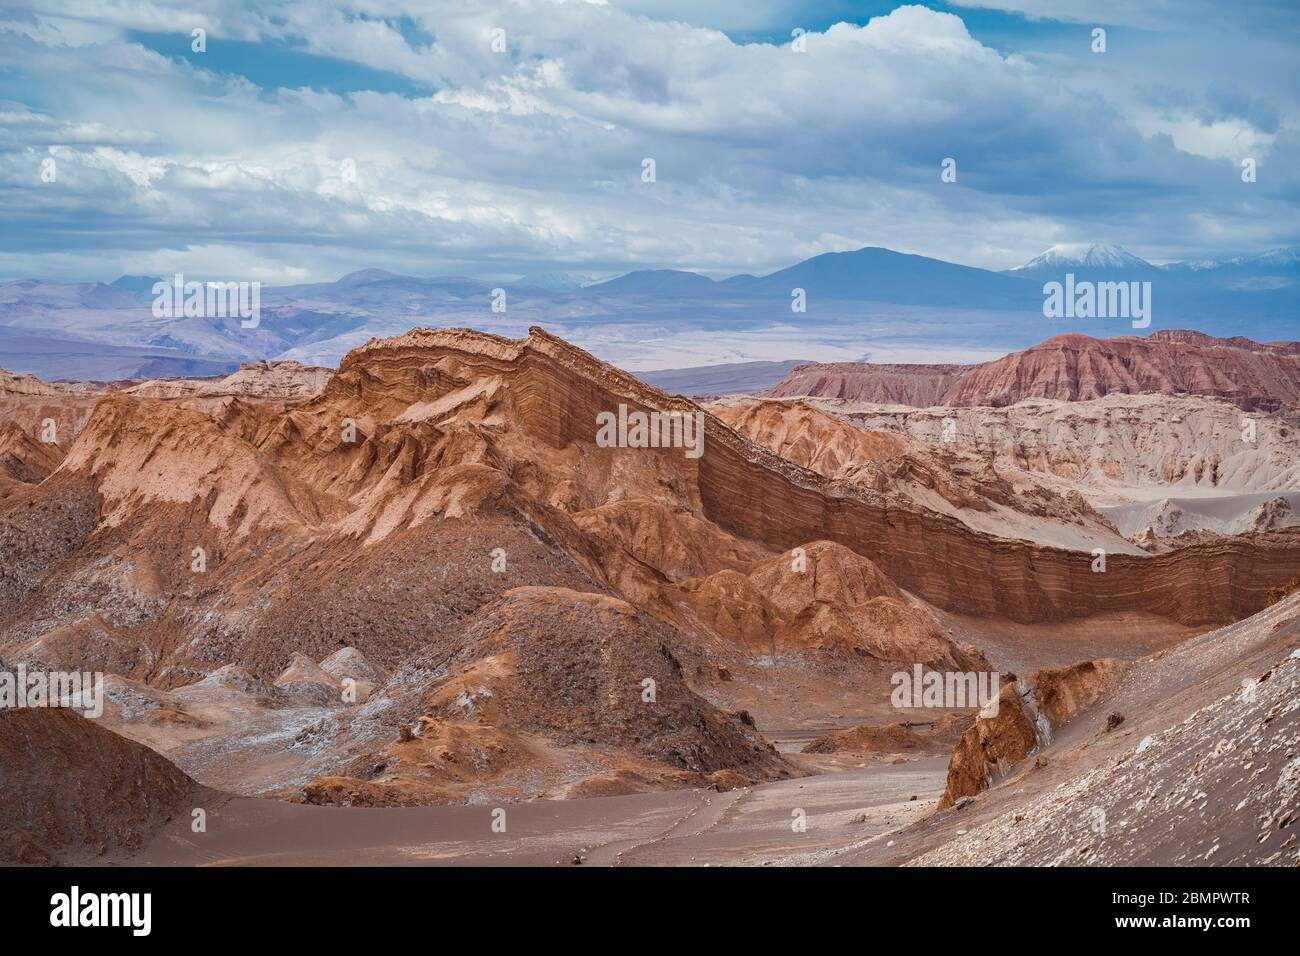 Moon Valley (en espagnol : Valle de la Luna) dans le désert d'Atacama, Chili, Amérique du Sud. Banque D'Images